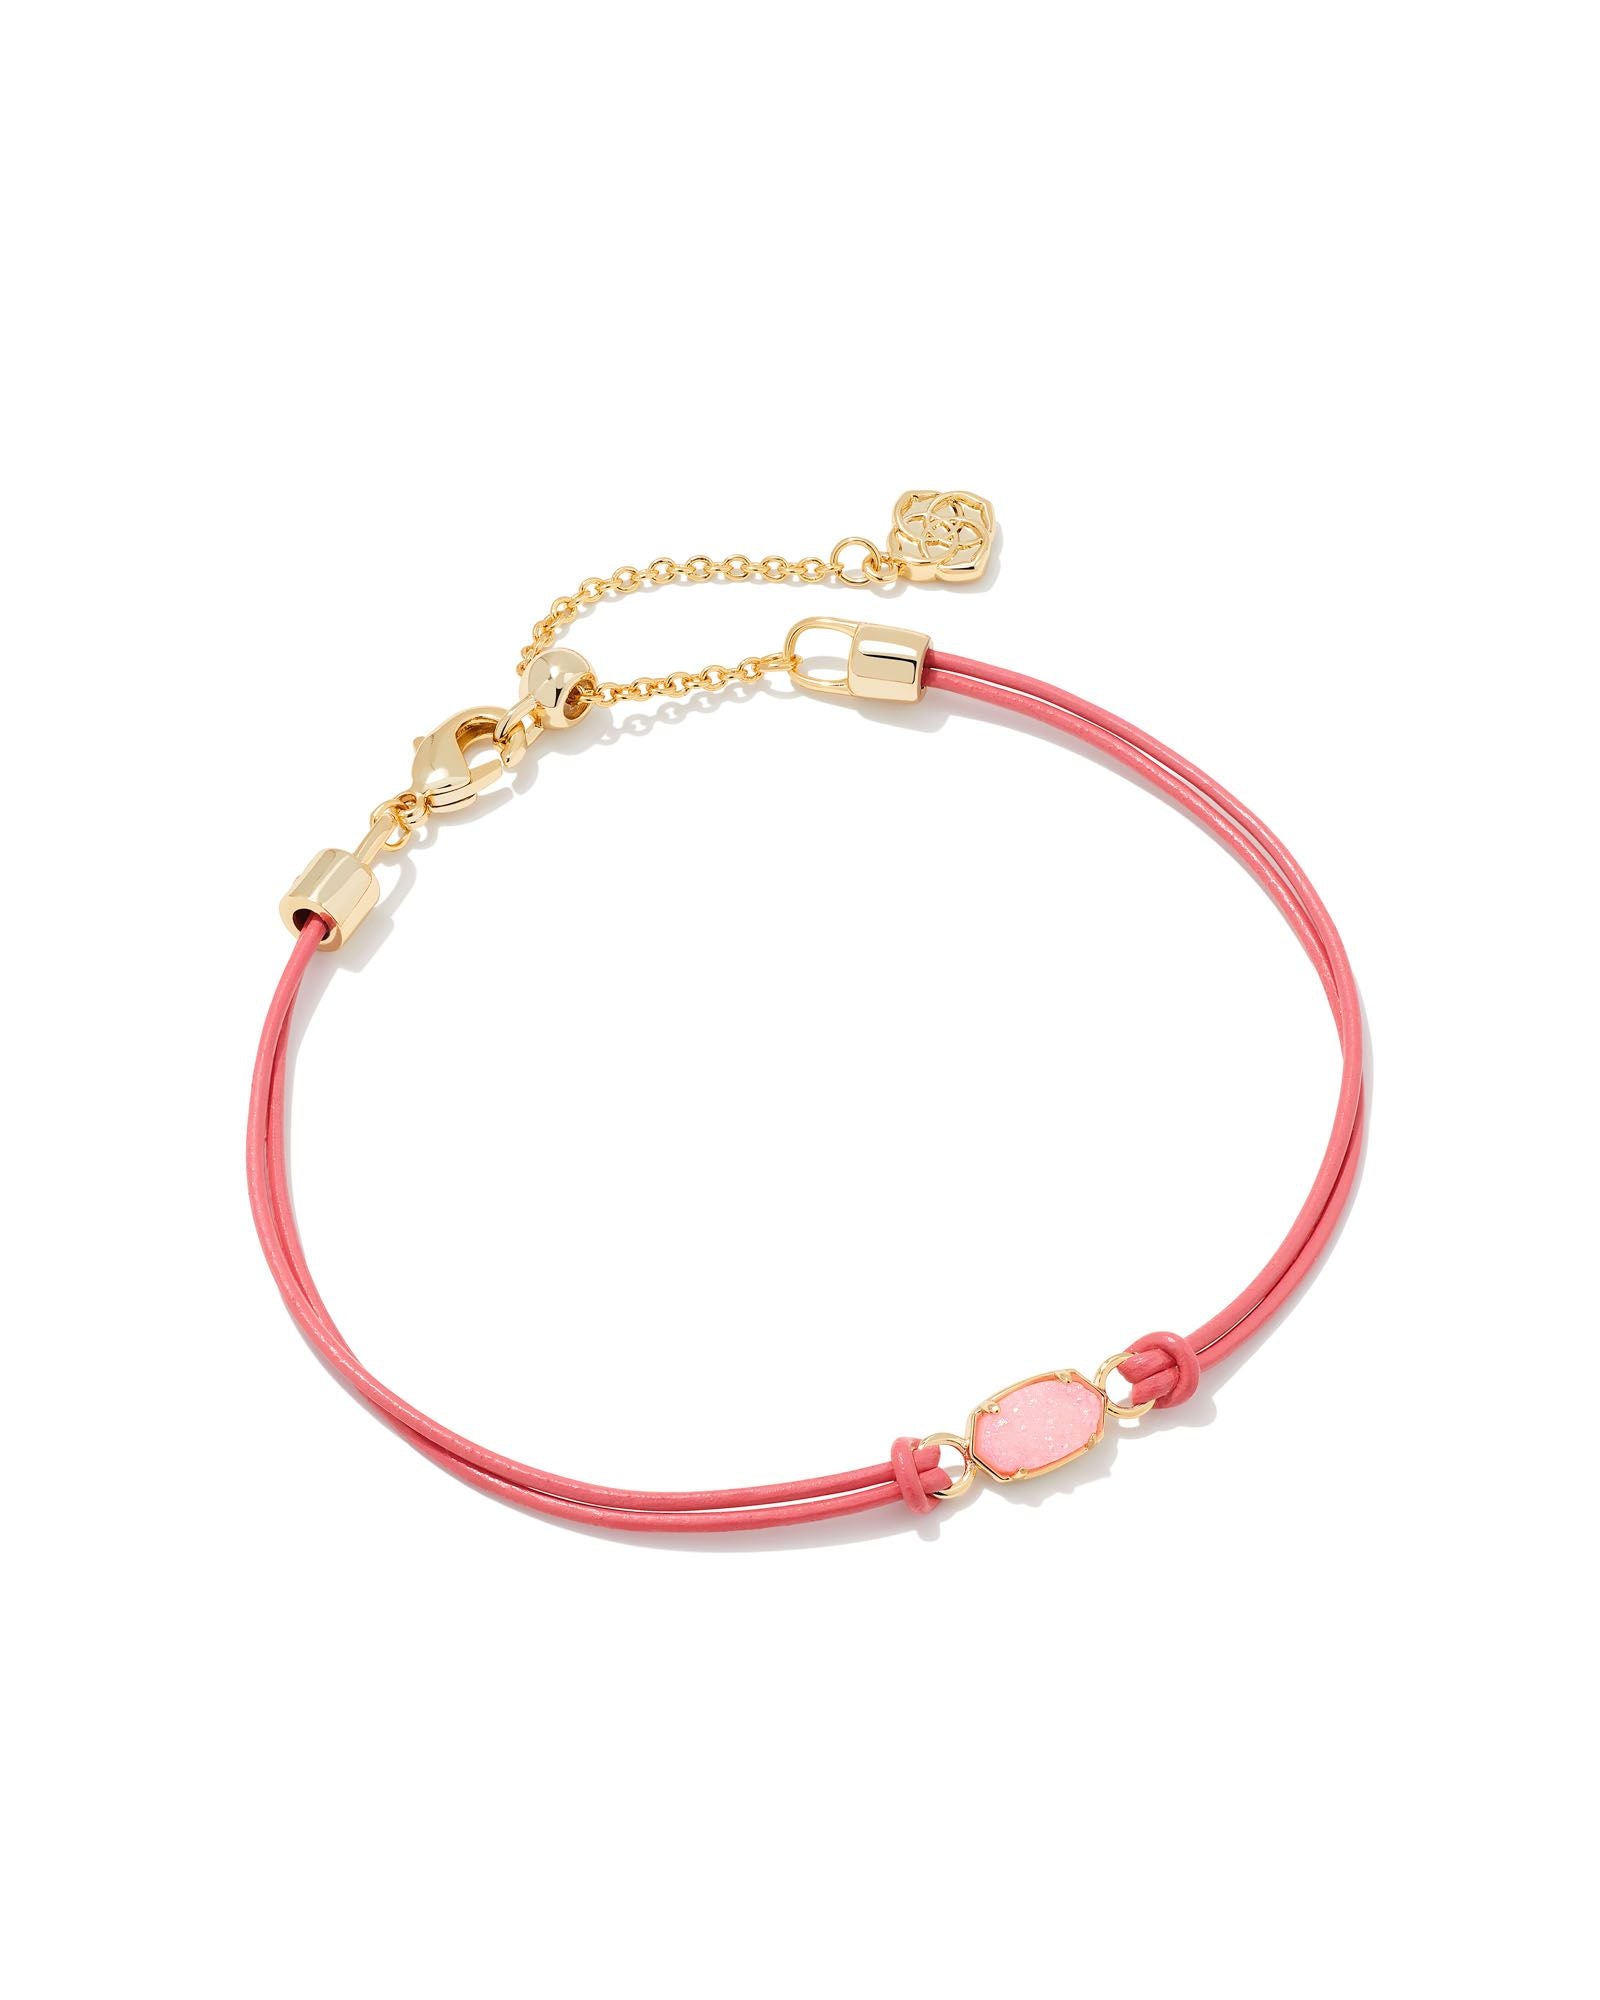 Emilie Corded Bracelet in Gold Light Pink Drusy